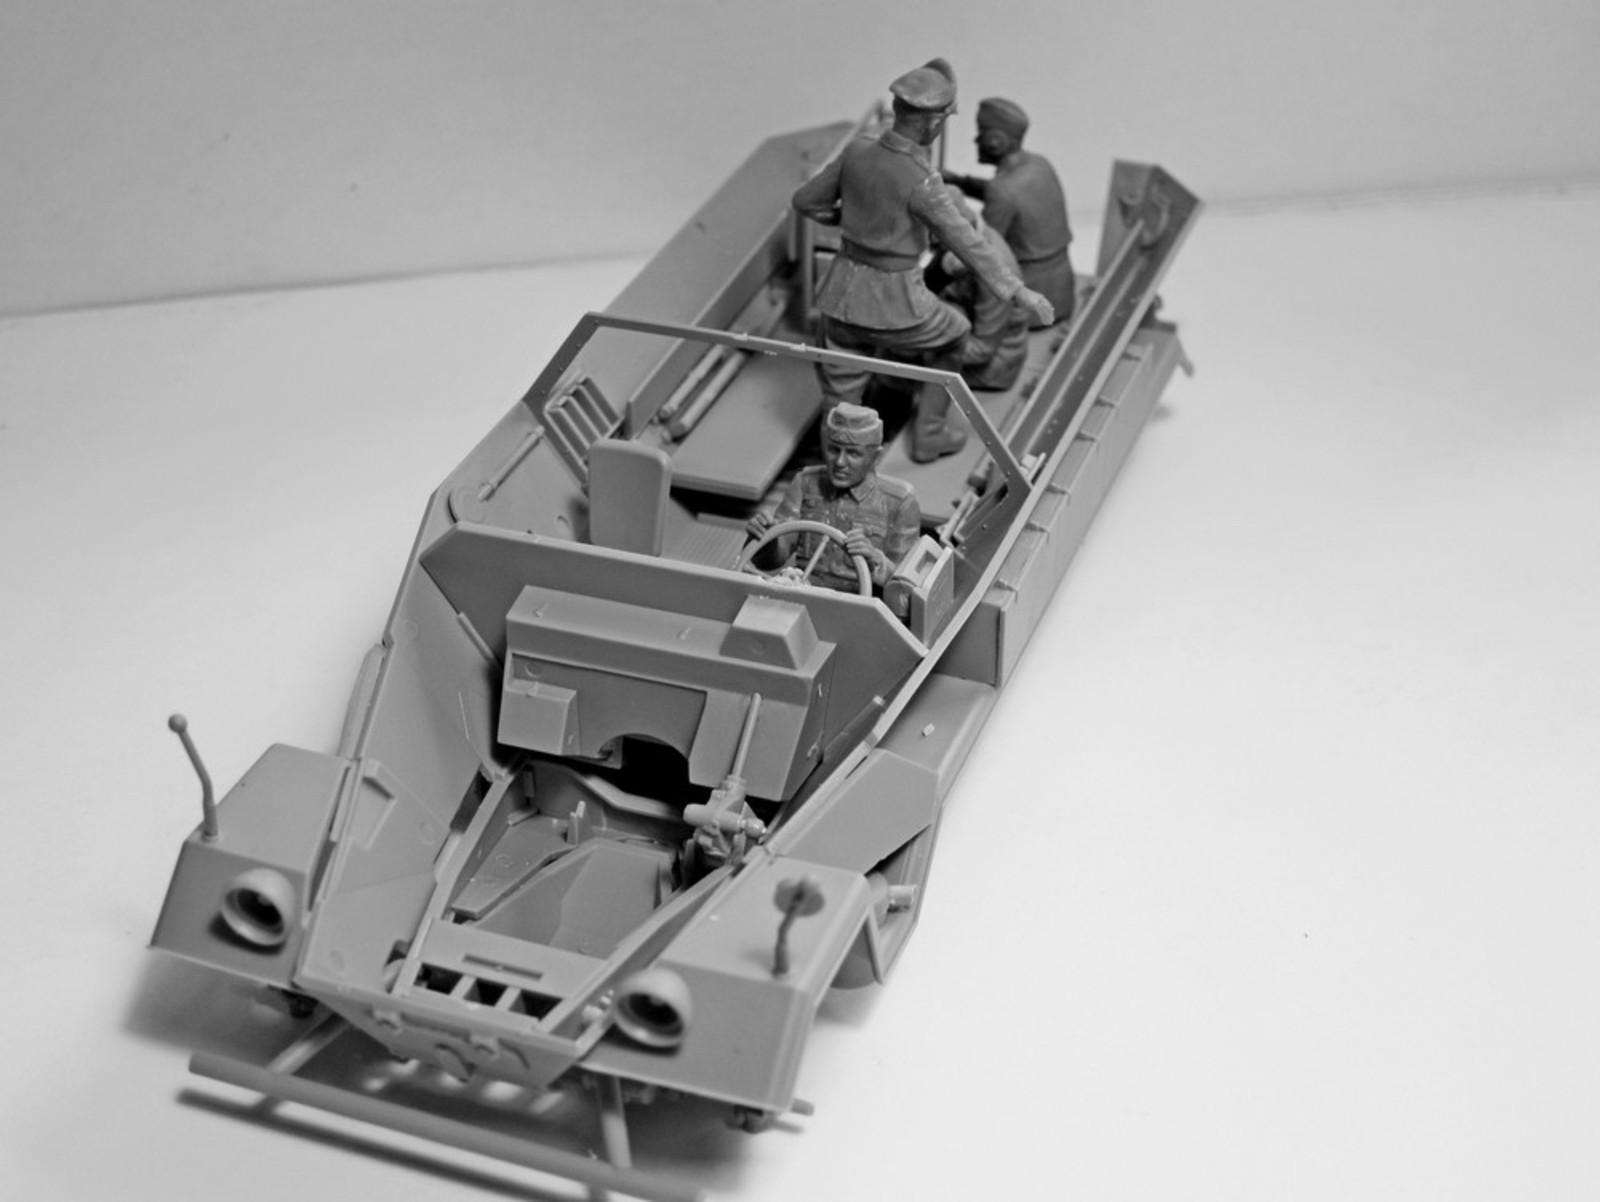 1/35 Германский экипаж командной машины (1939-1942 г.) #35644 / German Command Vehicle Crew (1939-1942) (4 figures) (100% new molds)